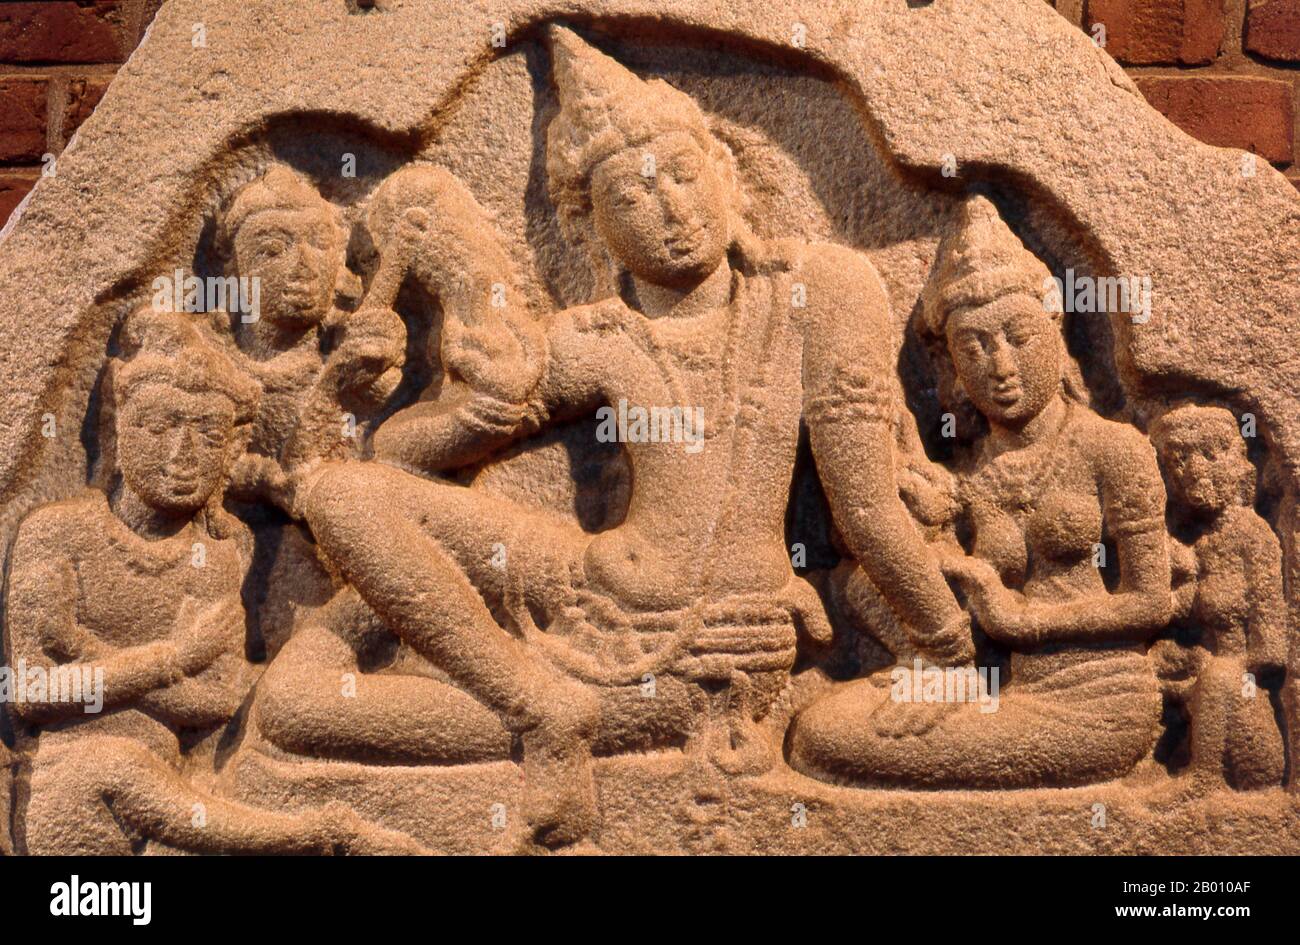 Sri Lanka: Frieze der königlichen Familie, Isurumuniya Tempel Museum, Anuradhapura. Isurumuniya Vihara ist ein Felstempel, der während der Herrschaft von König Devanampiya Tissa (r. 307 - 267 BCE). Anuradhapura ist eine der alten Hauptstädte Sri Lankas und berühmt für seine gut erhaltenen Ruinen. Vom 4th. Jahrhundert v. Chr. bis zum Beginn des 11th. Jahrhunderts n. Chr. war es die Hauptstadt. Während dieser Zeit blieb es eines der stabilsten und dauerhaftesten Zentren der politischen Macht und des städtischen Lebens in Südasien. Die antike Stadt, die für die buddhistische Welt heilig ist, ist heute von Klöstern umgeben. Stockfoto